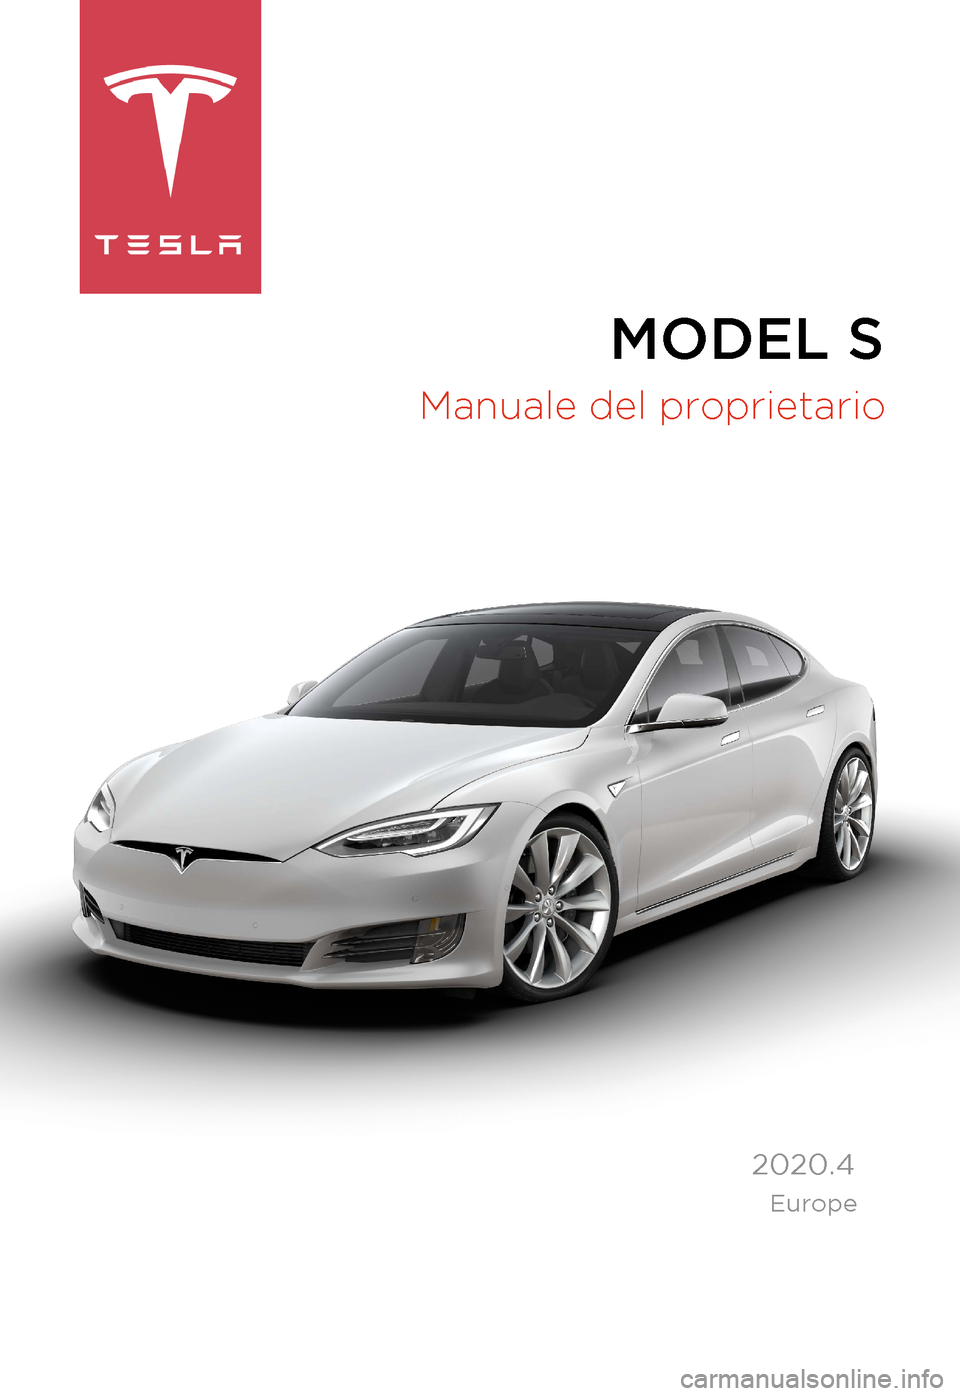 TESLA MODEL S 2020  Manuale del proprietario (in Italian)  MODEL S

Manuale del proprietario
  2020.4
  Europe 